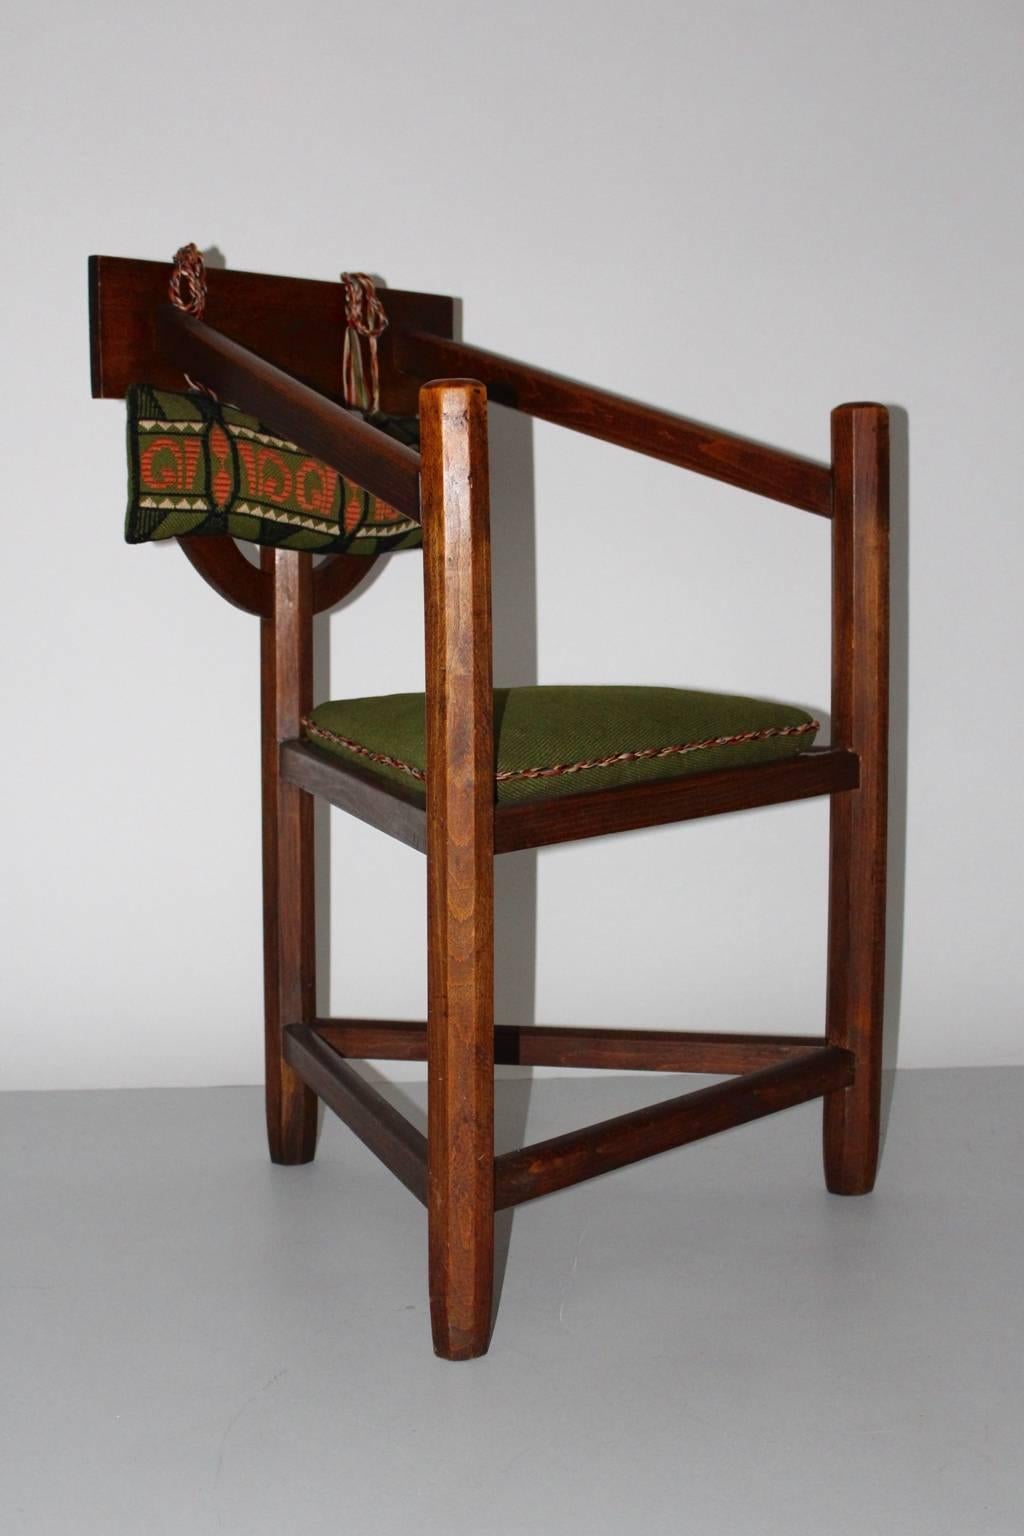 Art deco vintage rustikaler Sessel aus Buche 1920er Jahre Schweden. 
Ein schöner, freistehender Sessel mit drei Beinen und einer dreieckigen Sitzfläche mit losem, grün genähtem Stoffkissen. 
Der rustikale Sessel weist handgeschnitzte Details an